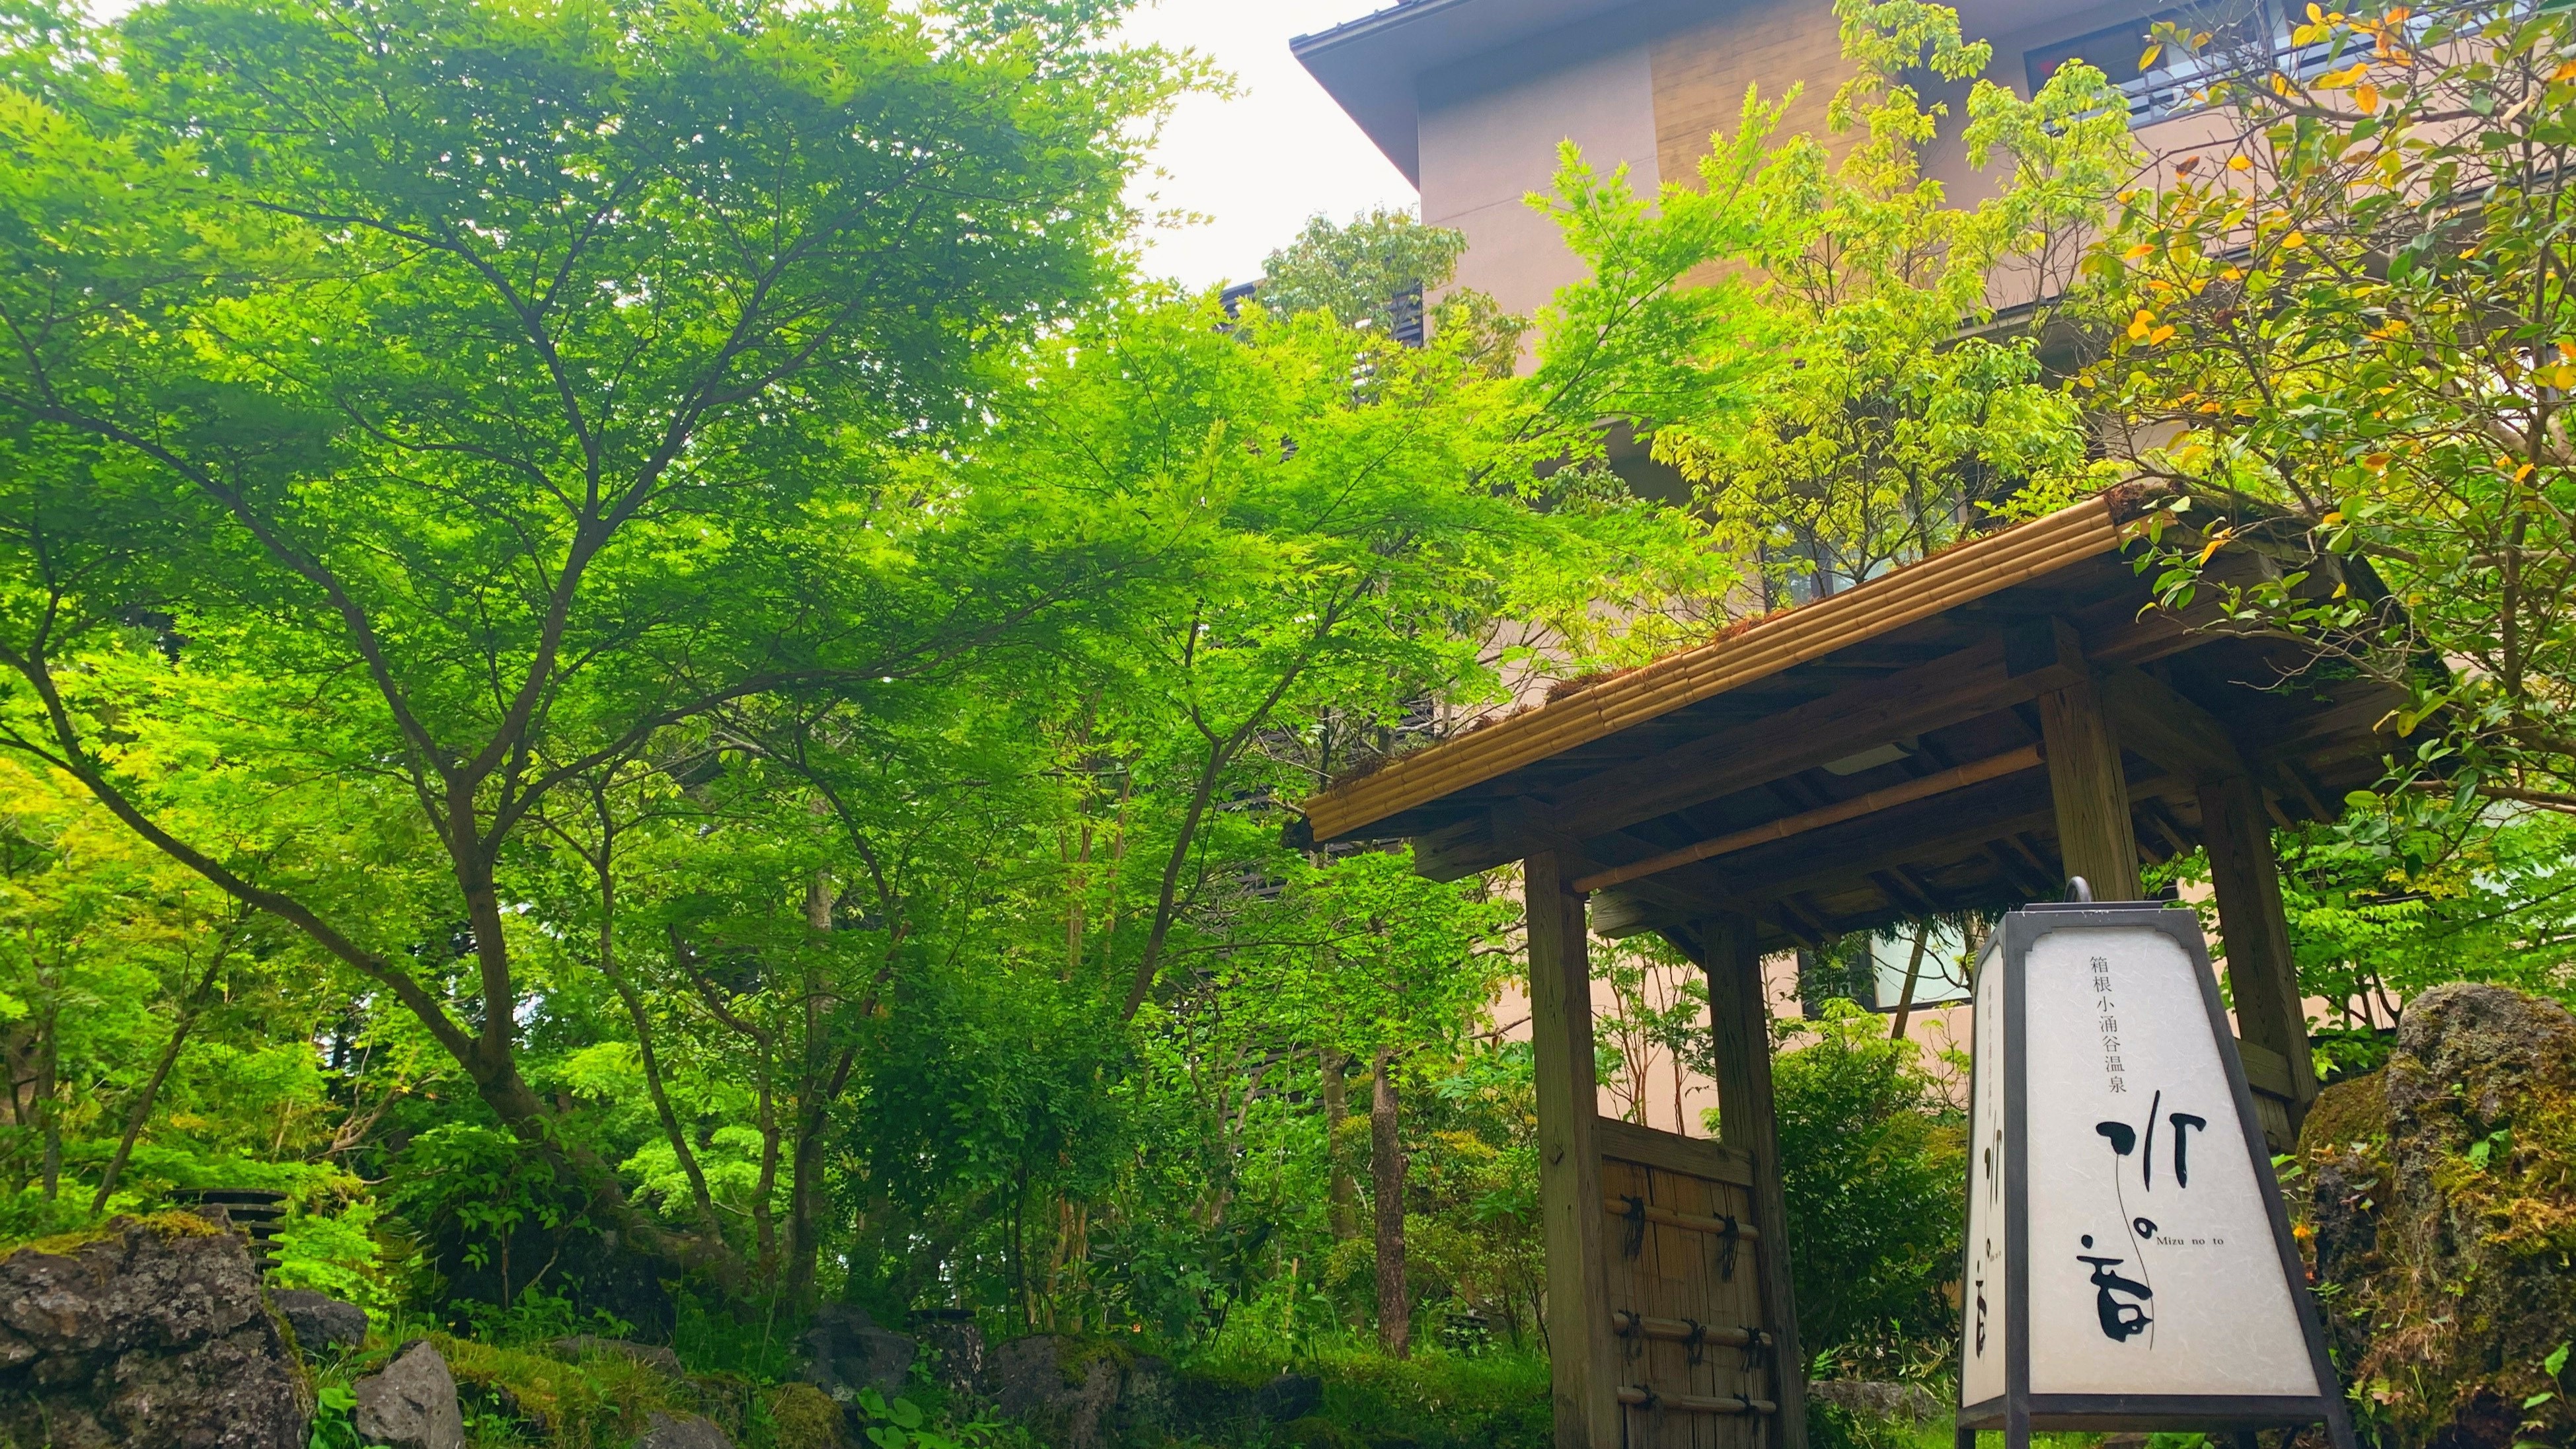 【外観】自然豊かな緑の木々に囲まれた杜の湯宿